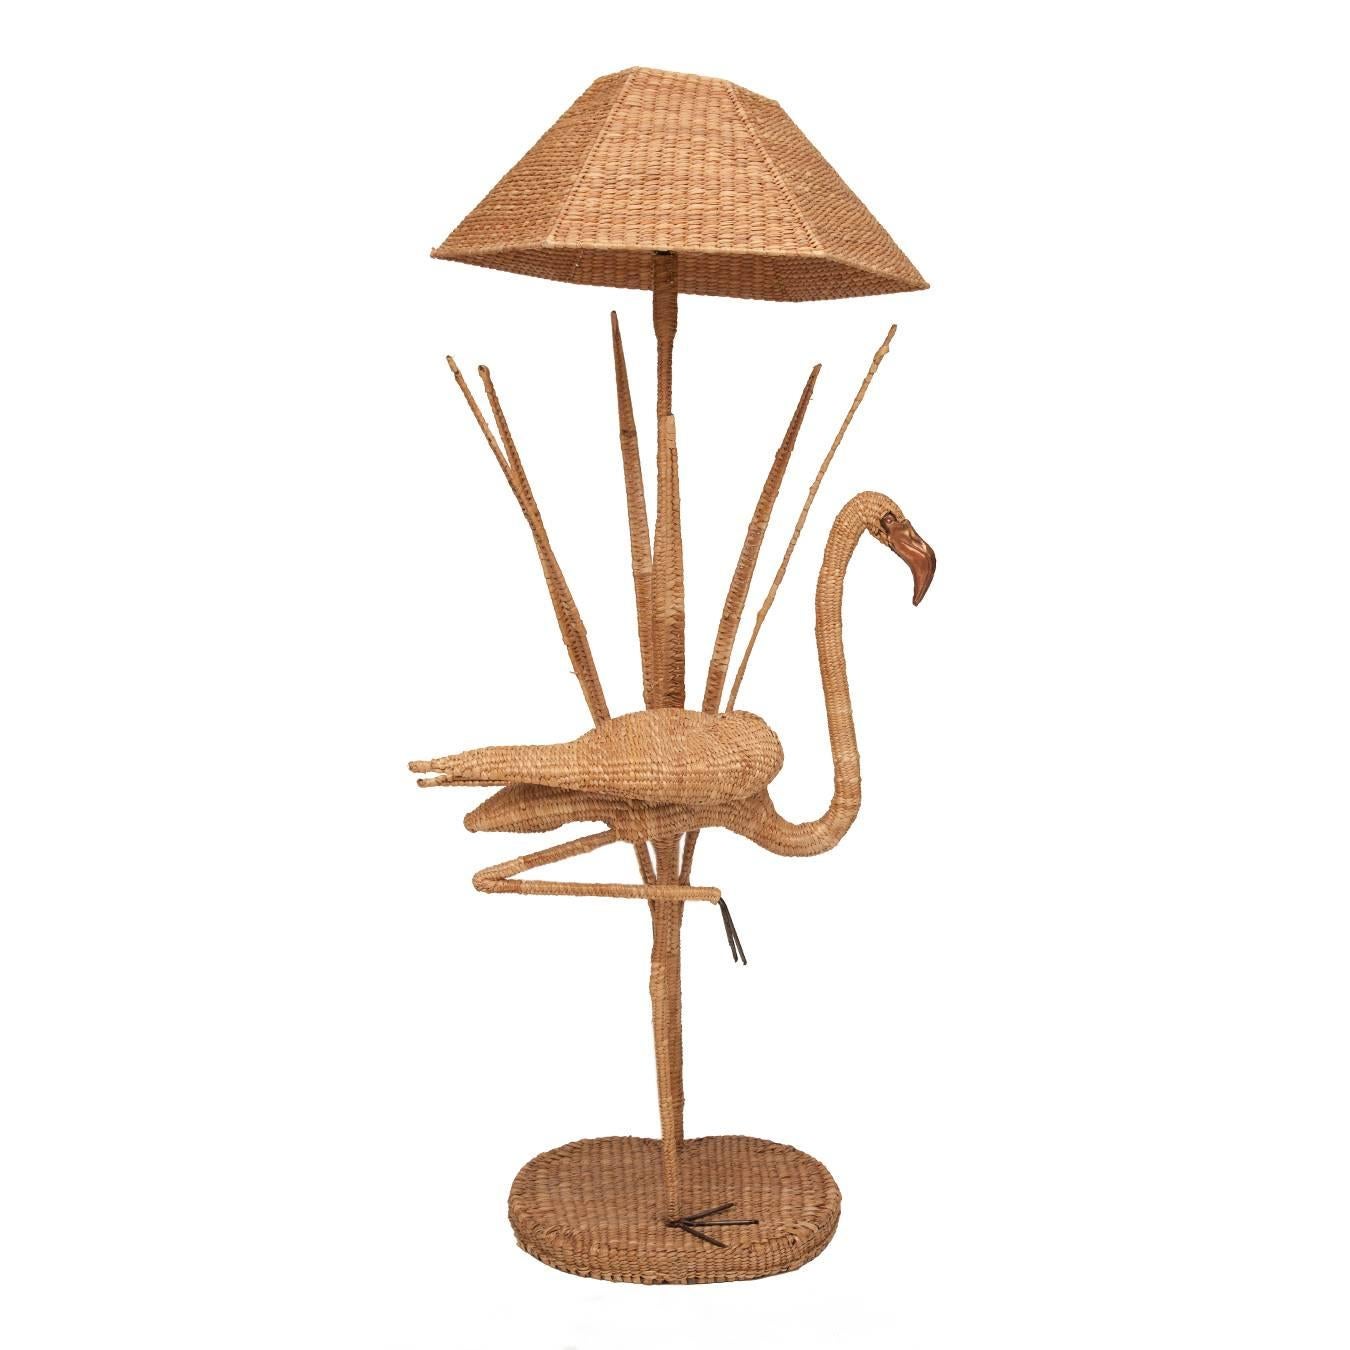 Mario Lopez Torres flamingo wicker floor lamp with bronze accent.